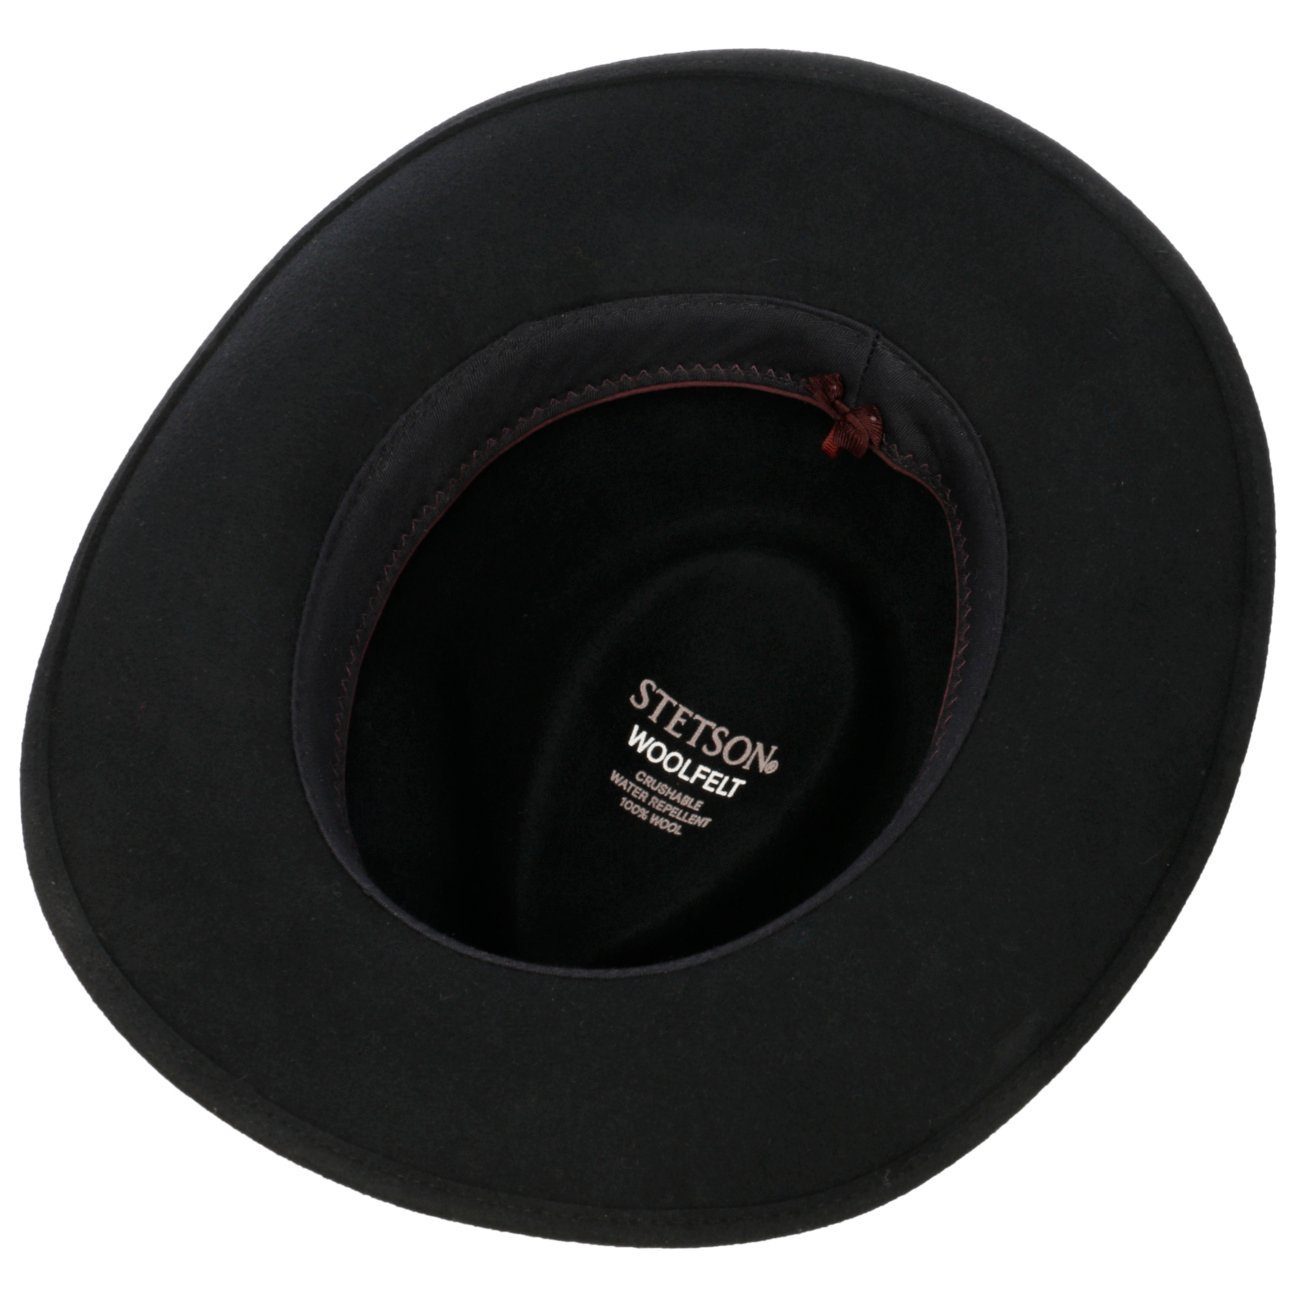 Stetson (1-St) mit Cowboyhut Wollfilzhut Lederband schwarz